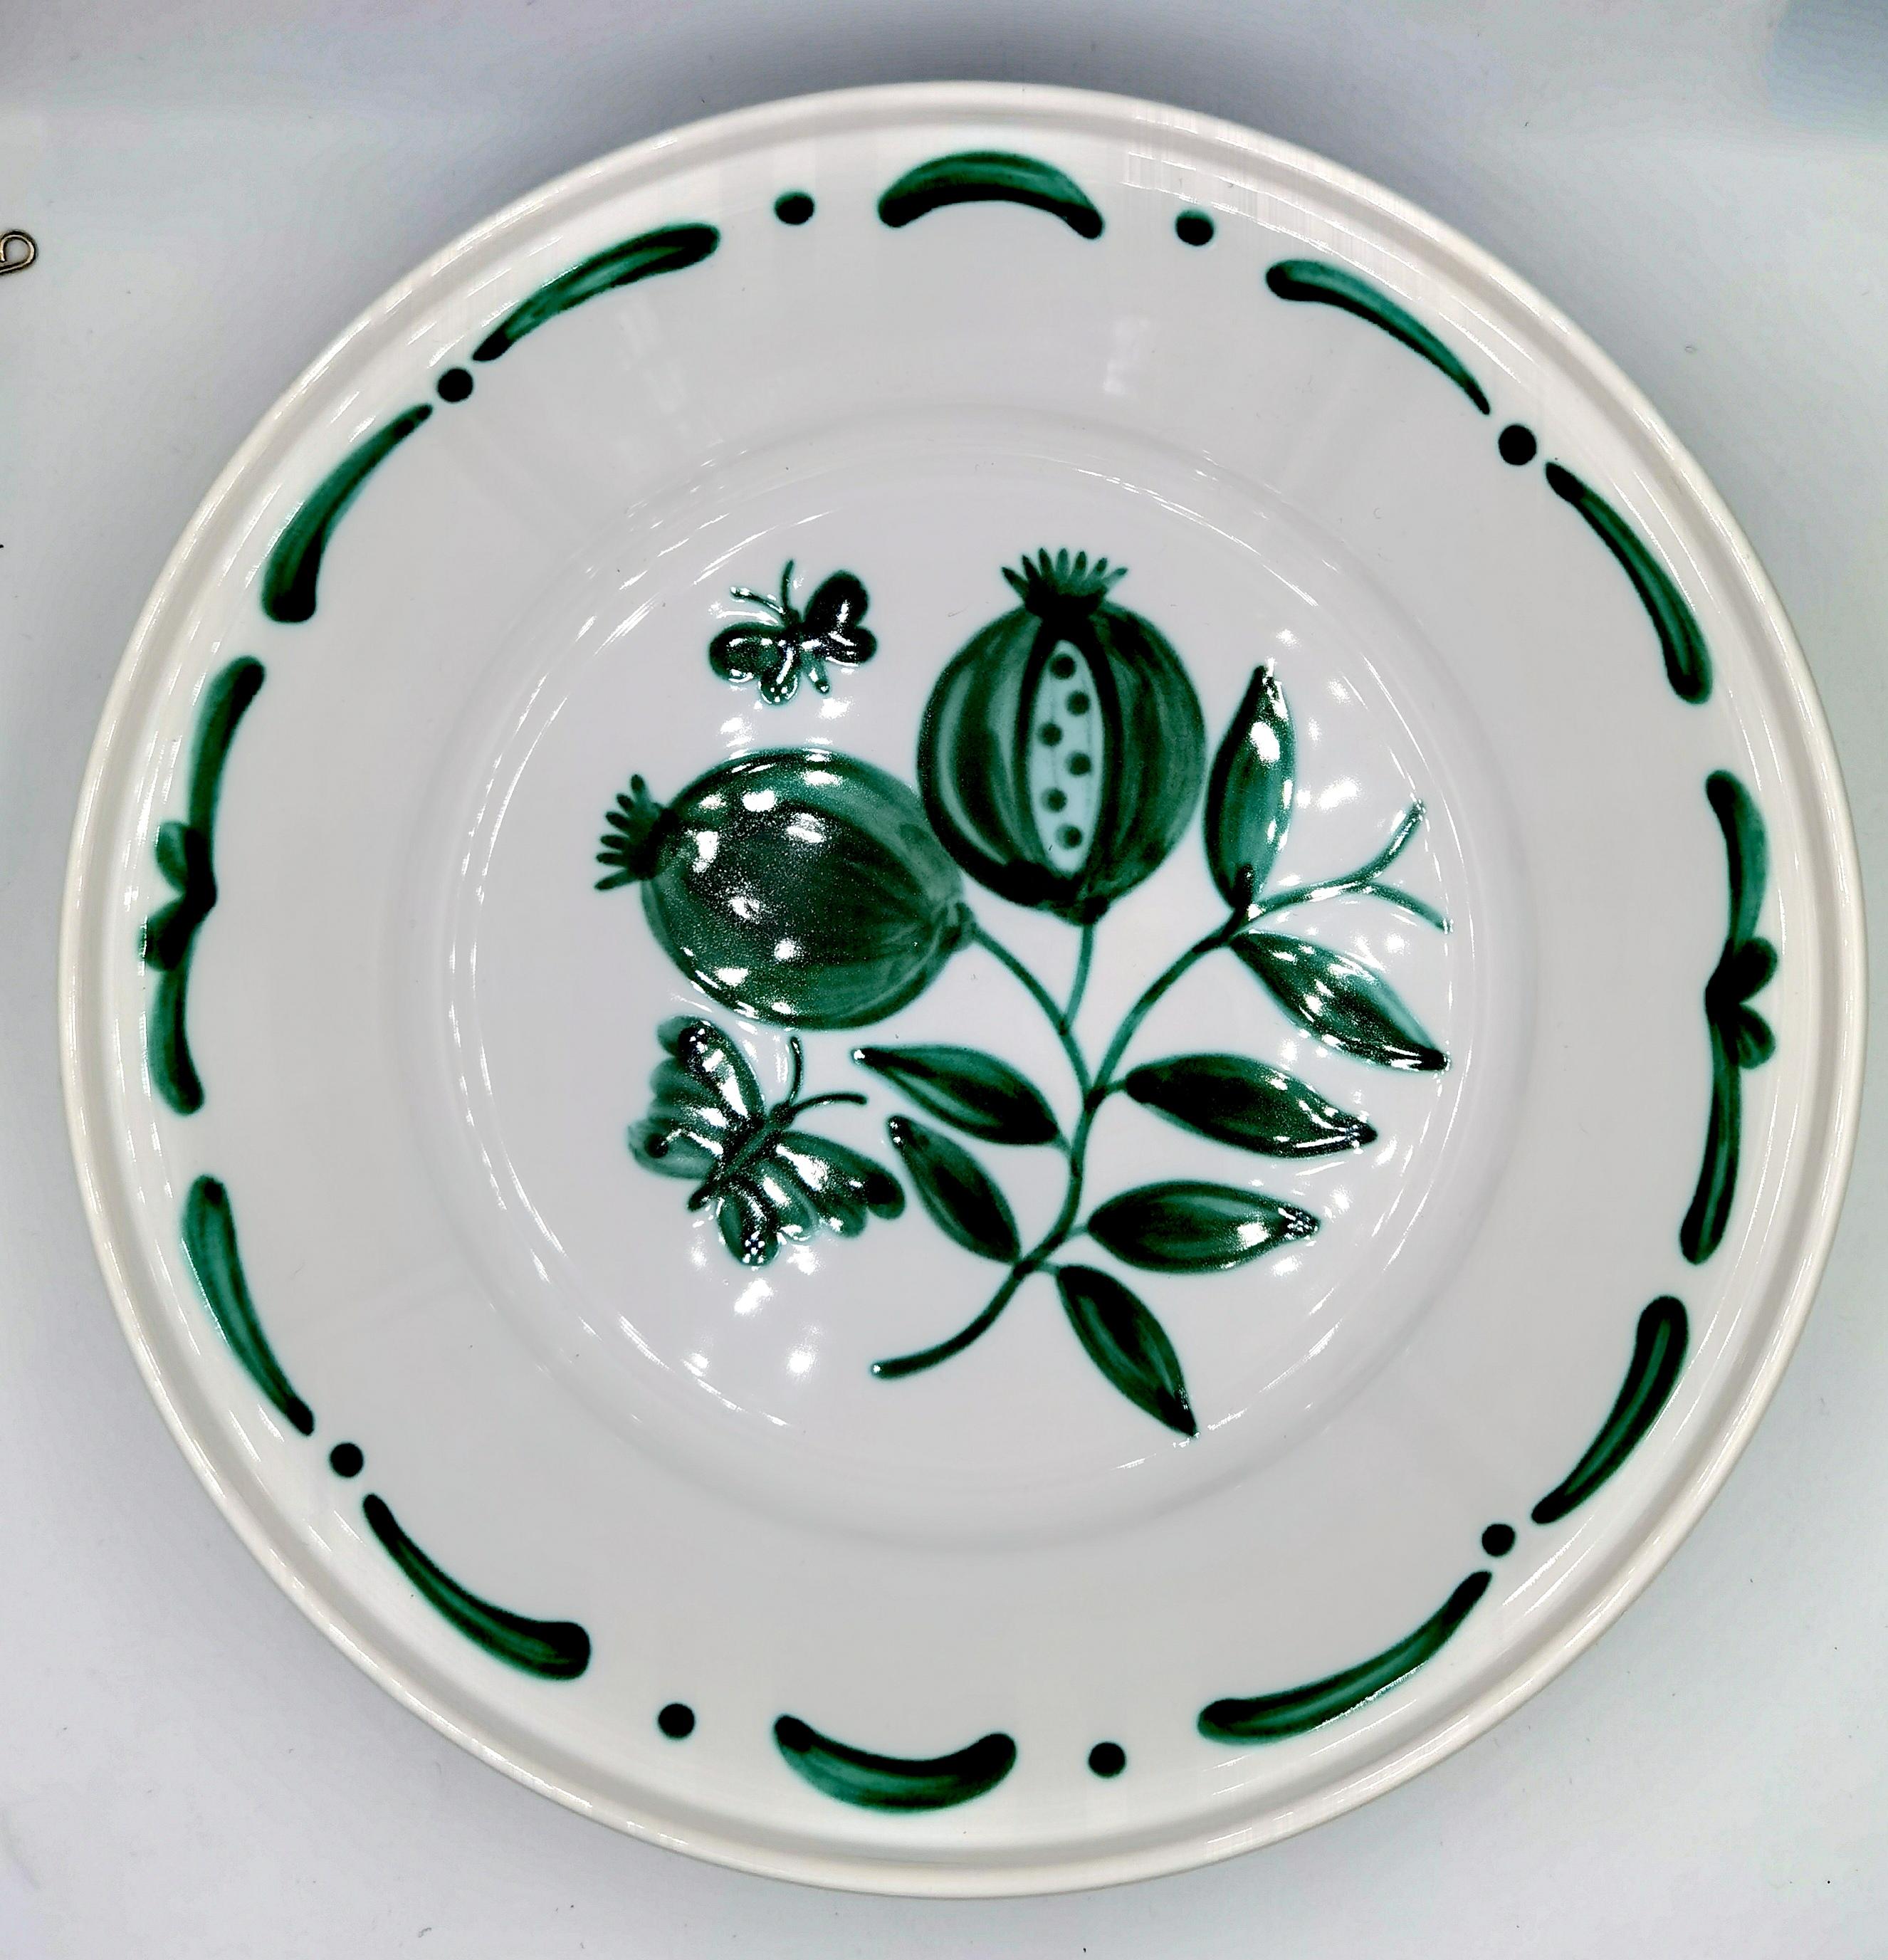 Große freihändig bemalte Keramikschale im Landhausstil. Verziert mit einem handgemalten grünen Granatapfeldekor in der Mitte mit Schmetterlingen und einer freihändig gemalten Girlande in Grün. Die Girlande kann in verschiedenen Farben bestellt